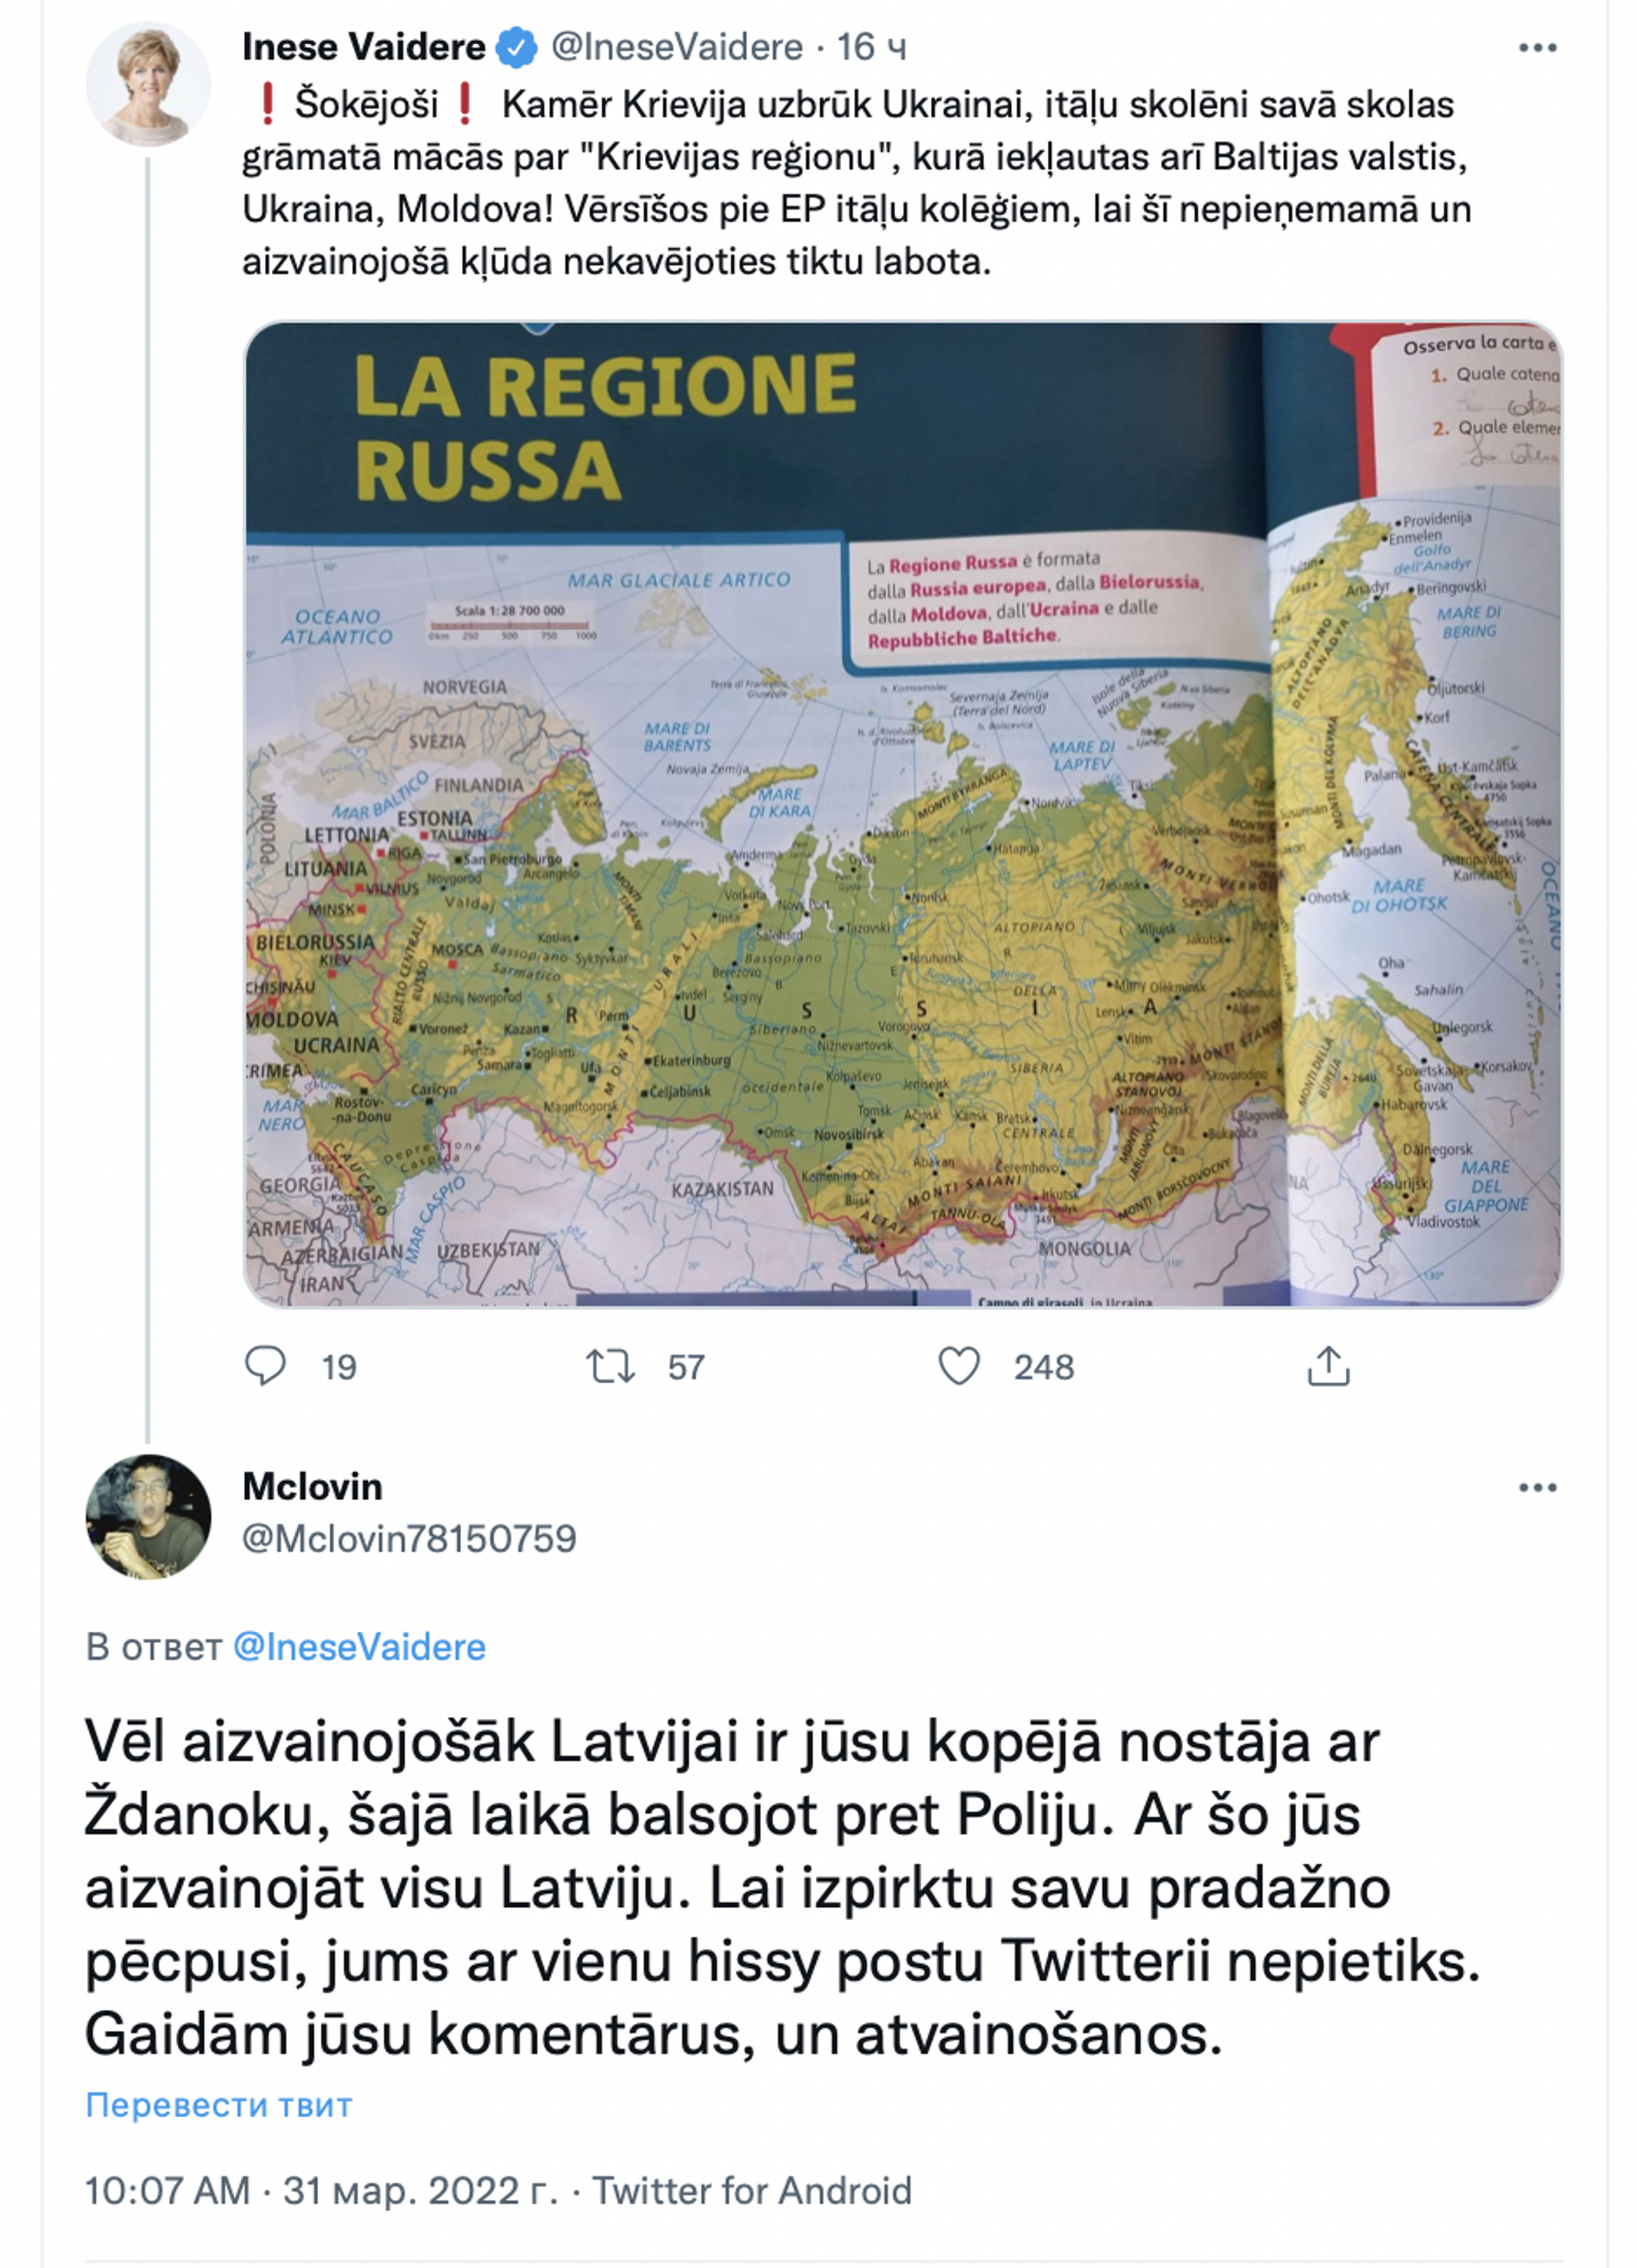 Скриншот поста в Twitter  - Sputnik Латвия, 1920, 31.03.2022